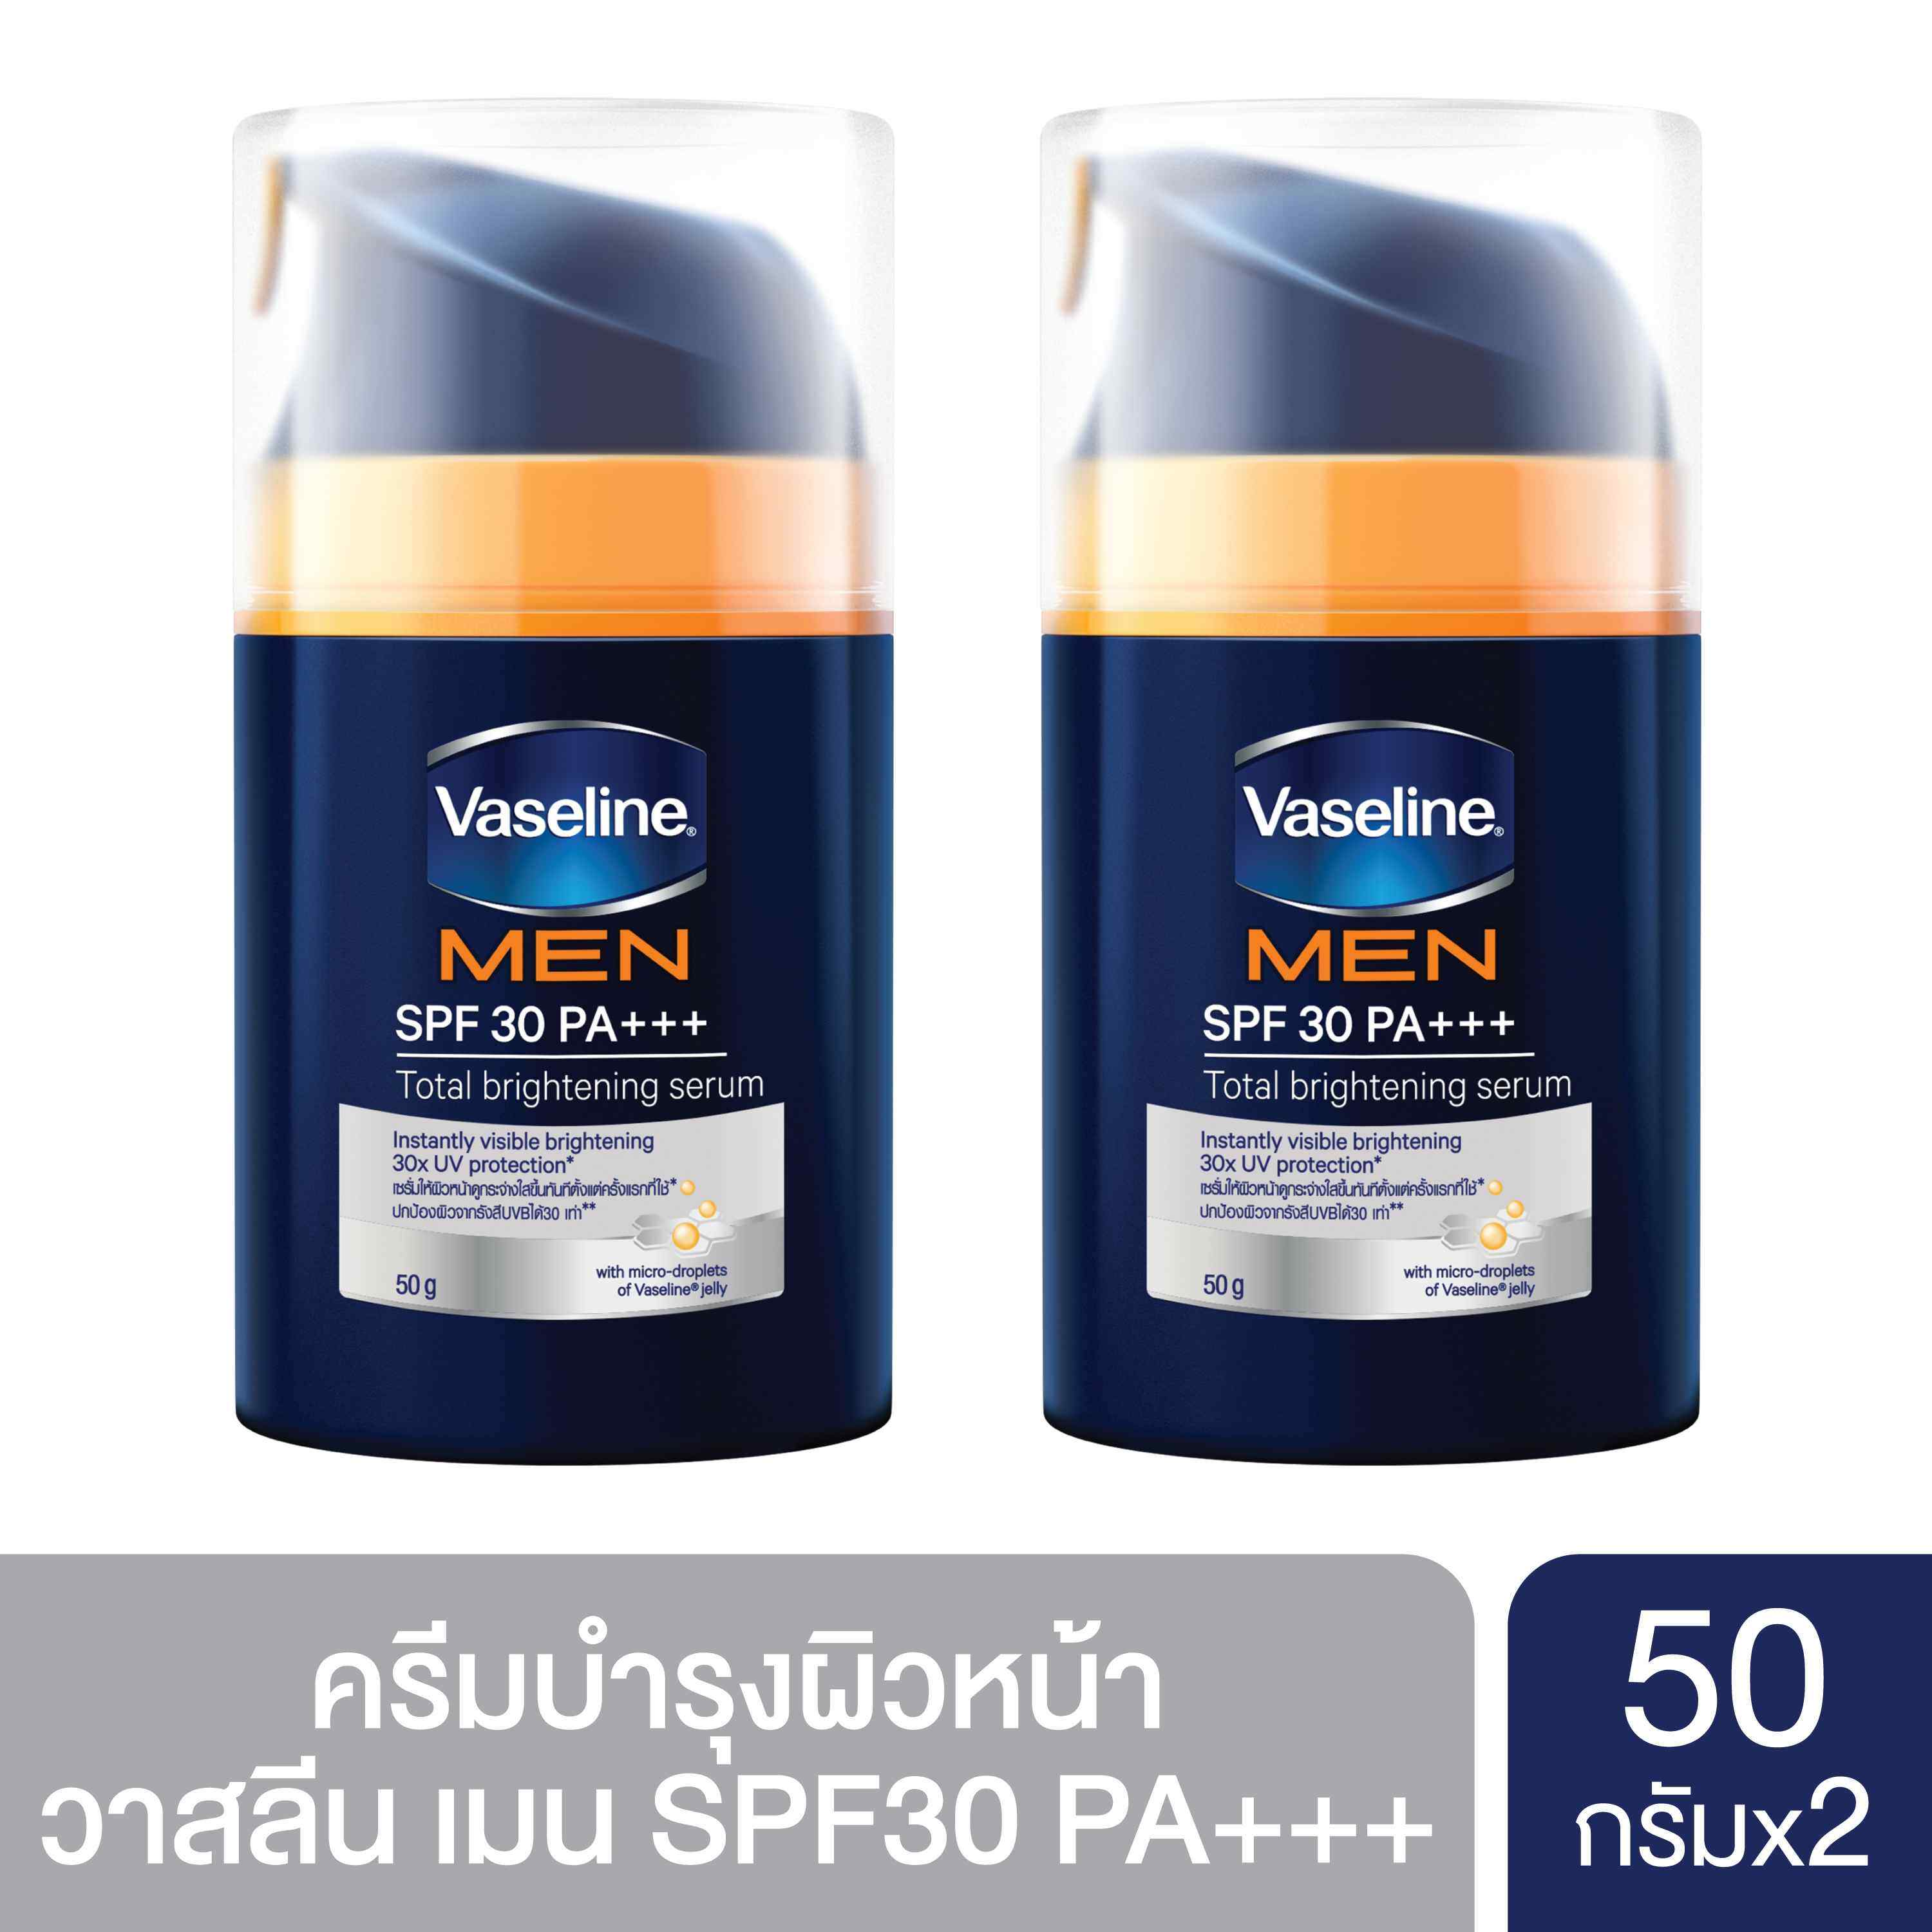 [ส่งฟรี] Vaseline Men SPF 30 PA+++Serum  วาสลีนเมน เอสพีเอฟ 30 เซรั่ม 50 กรัม (2 ชิ้น)